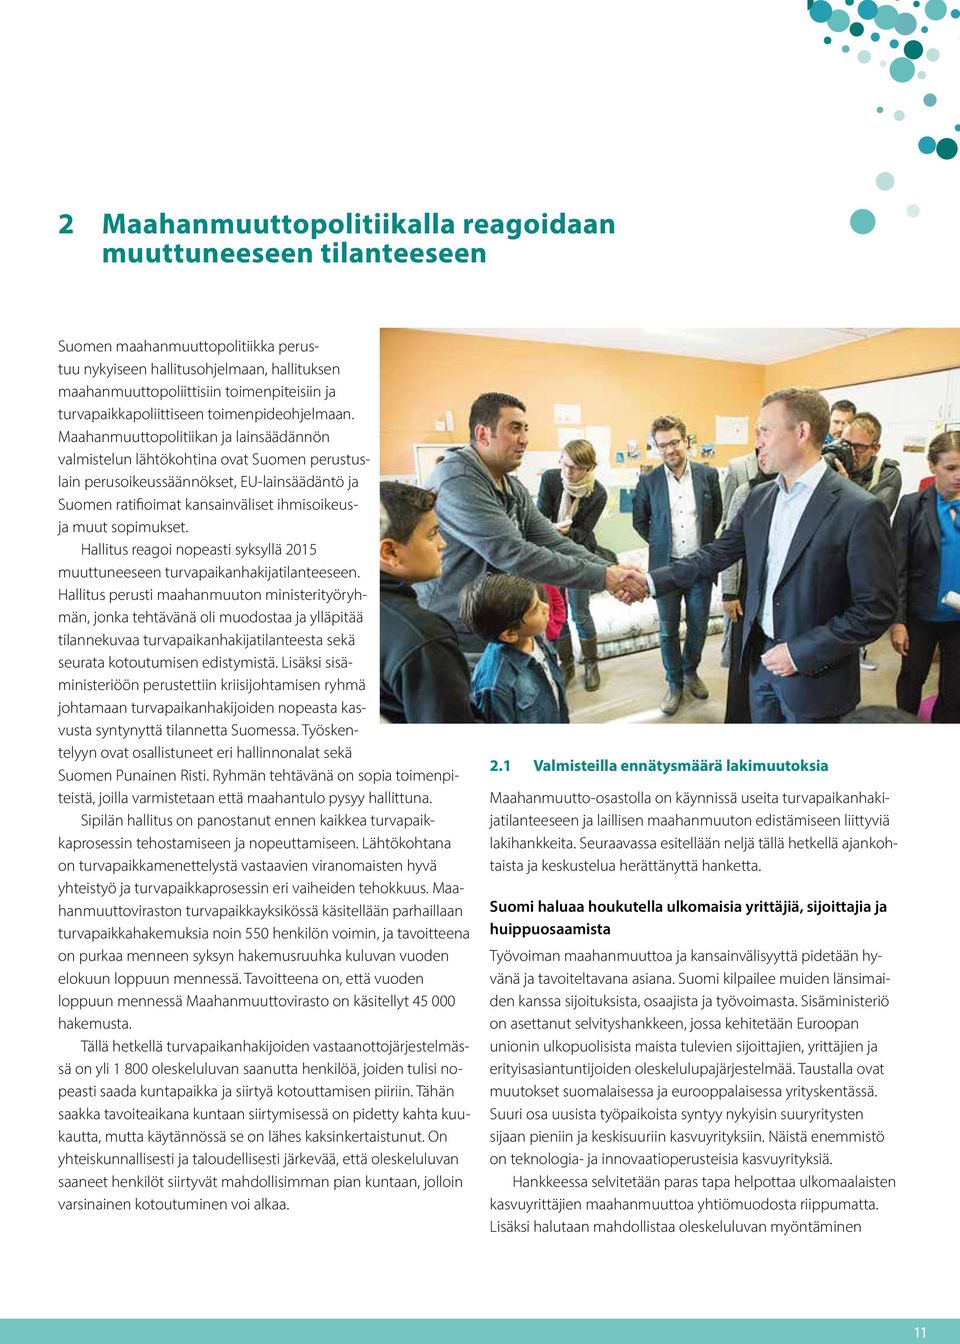 Maahanmuuttopolitiikan ja lainsäädännön valmistelun lähtökohtina ovat Suomen perustuslain perusoikeussäännökset, EU-lainsäädäntö ja Suomen ratifioimat kansainväliset ihmisoikeusja muut sopimukset.